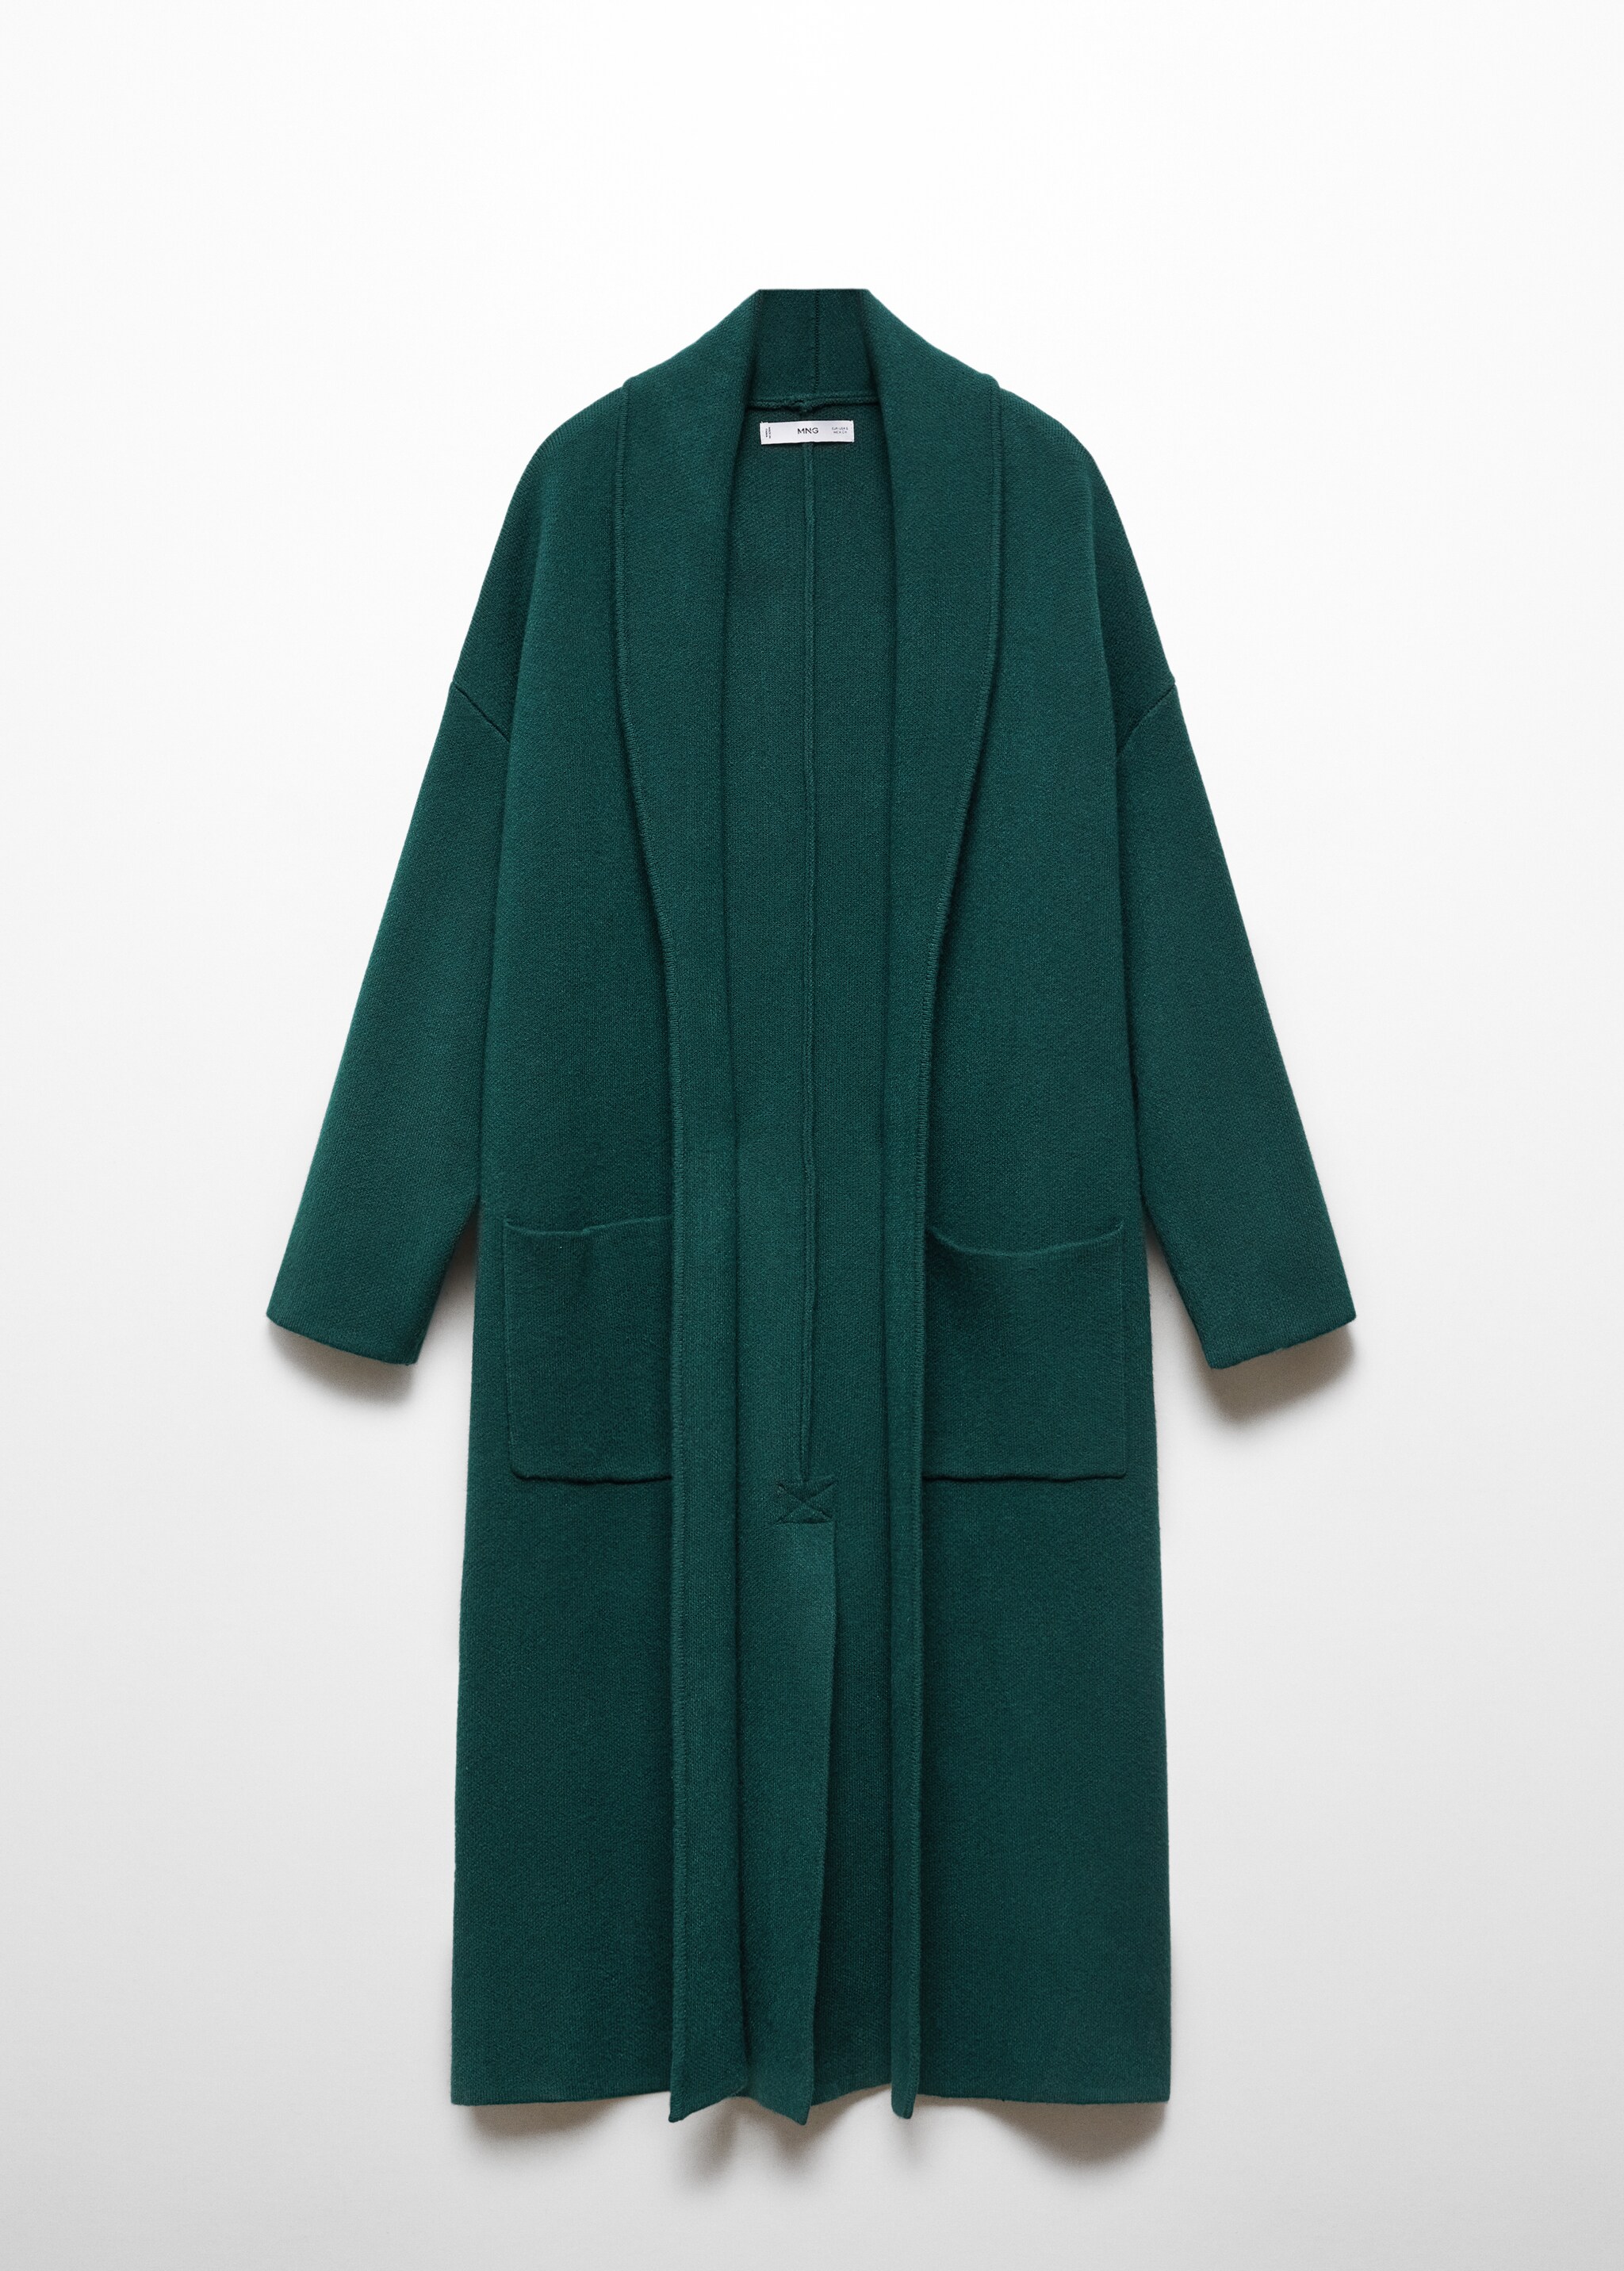 Объемное пальто из трикотажа с карманами - Изделие без модели